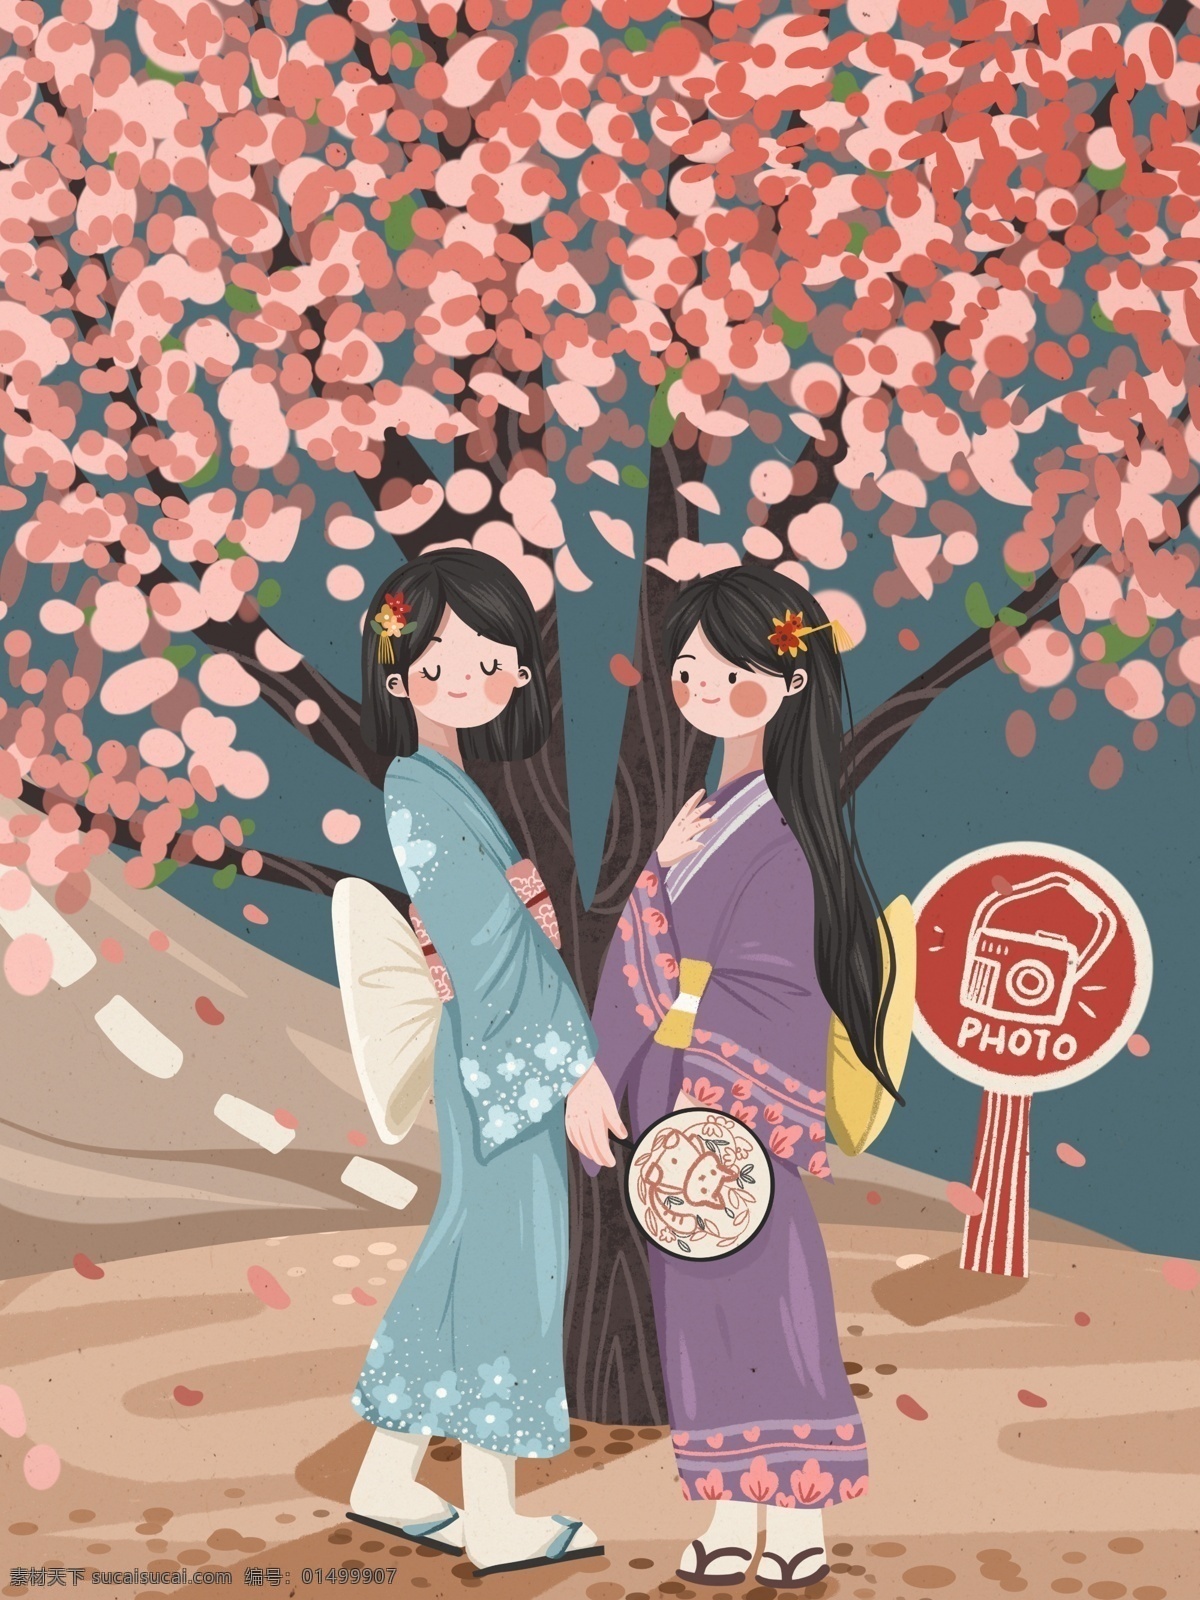 日本 樱花 季 女孩 樱花树 夏 拍照 唯美 小 清新 花卉 小清新 可爱 浪漫 樱花季 和服 温馨